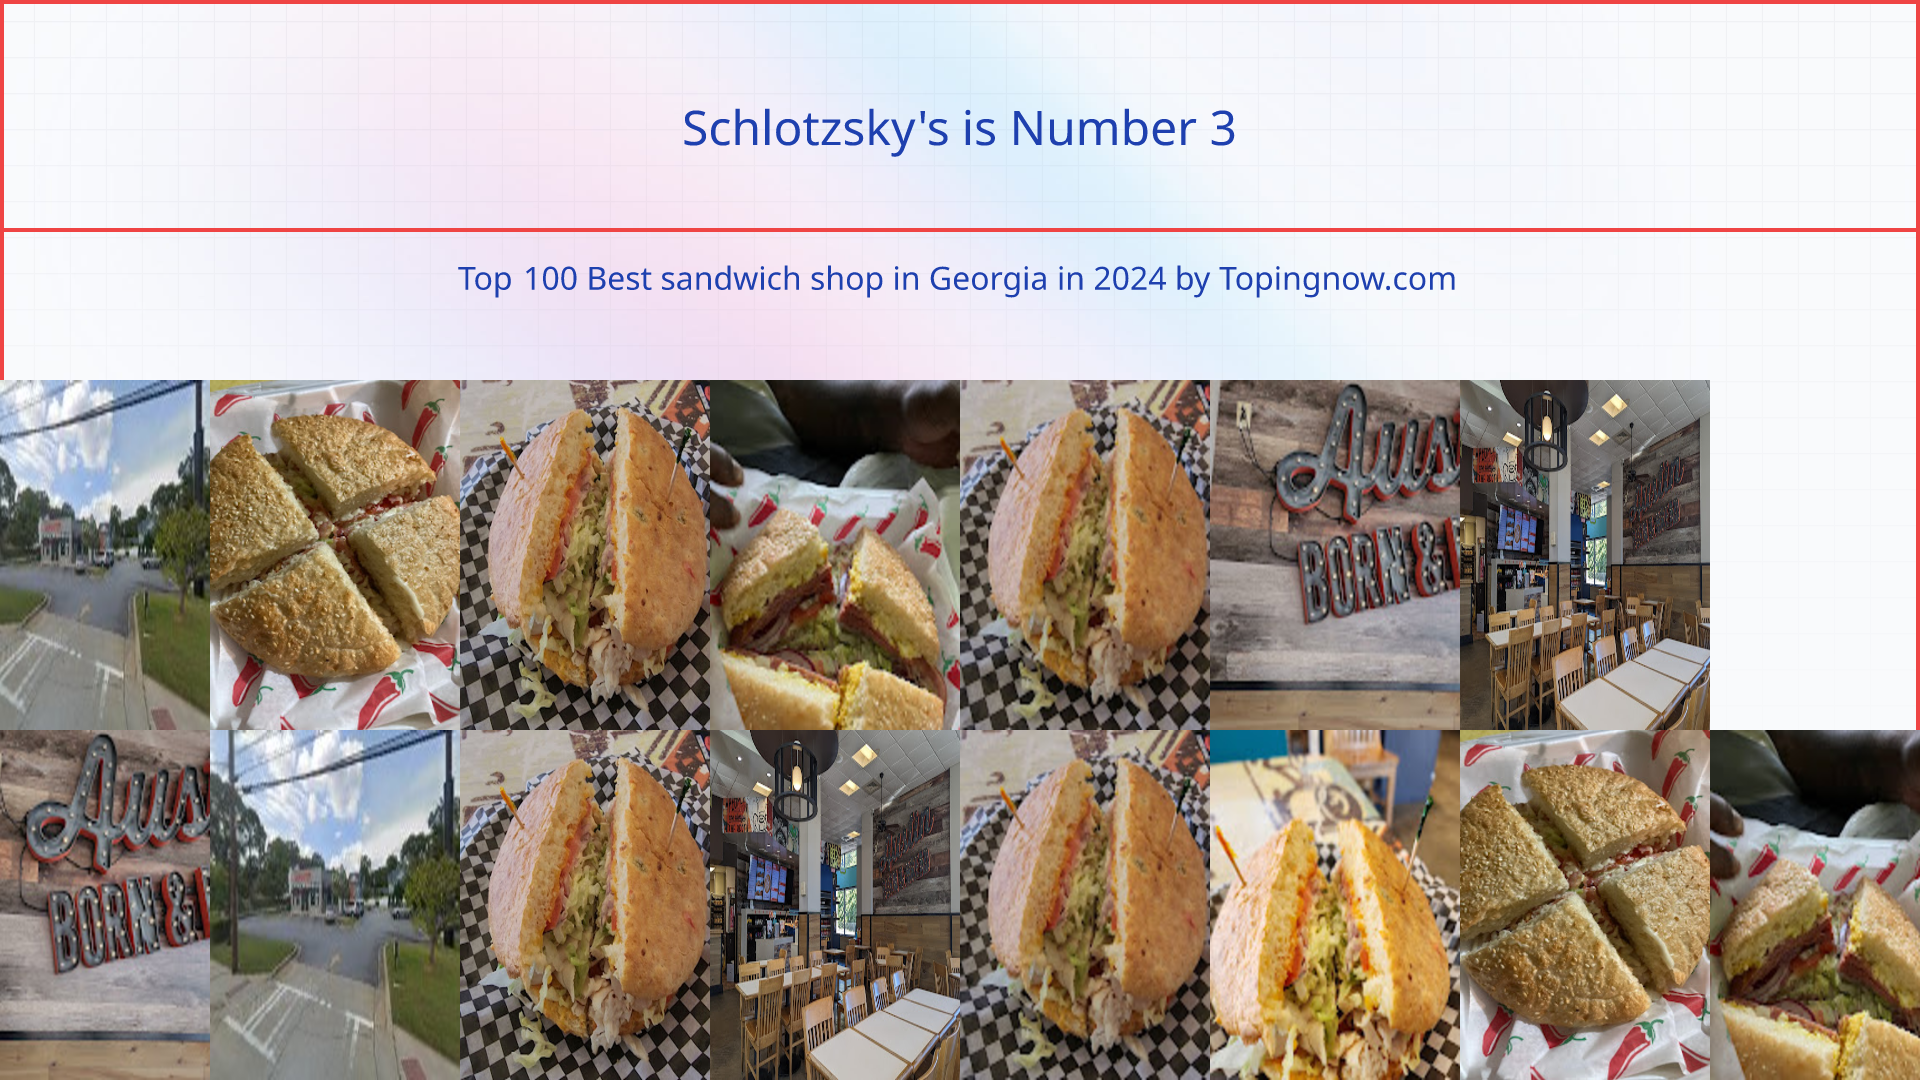 Schlotzsky's: Top 100 Best sandwich shop in Georgia in 2024